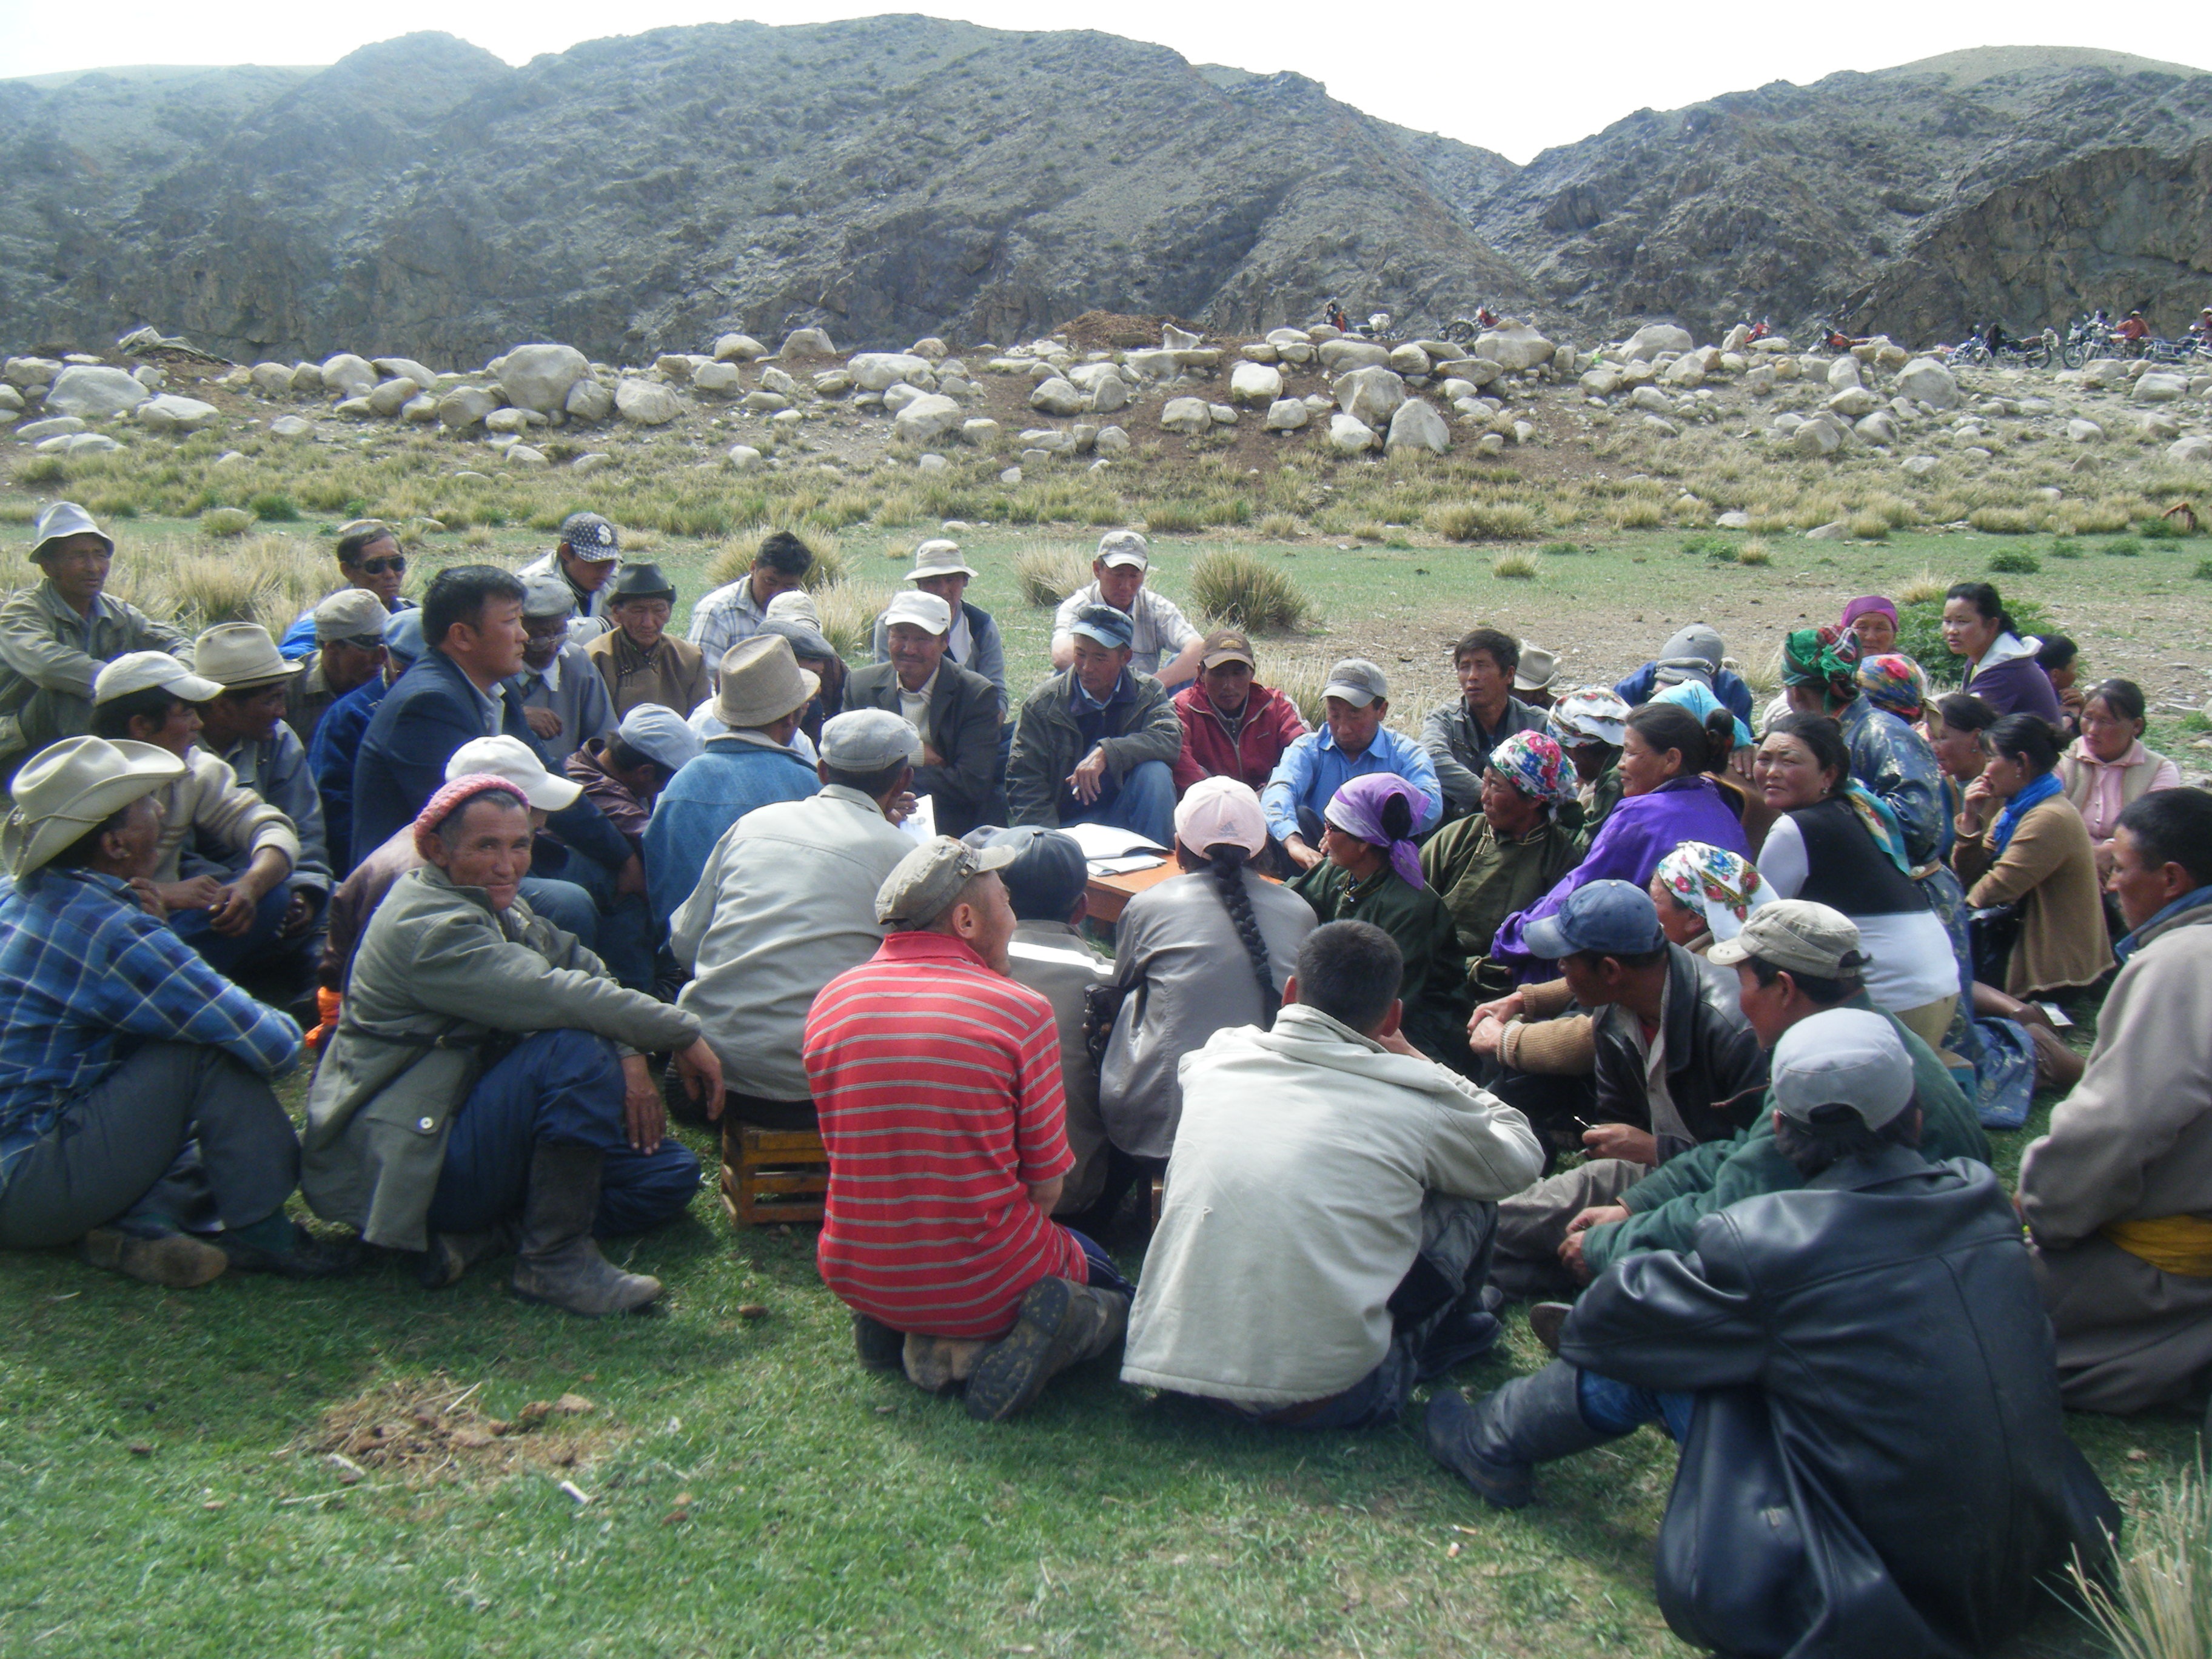 Un gruppo di allevatrici e allevatori seduti sull’erba nel pieno di una discussione.